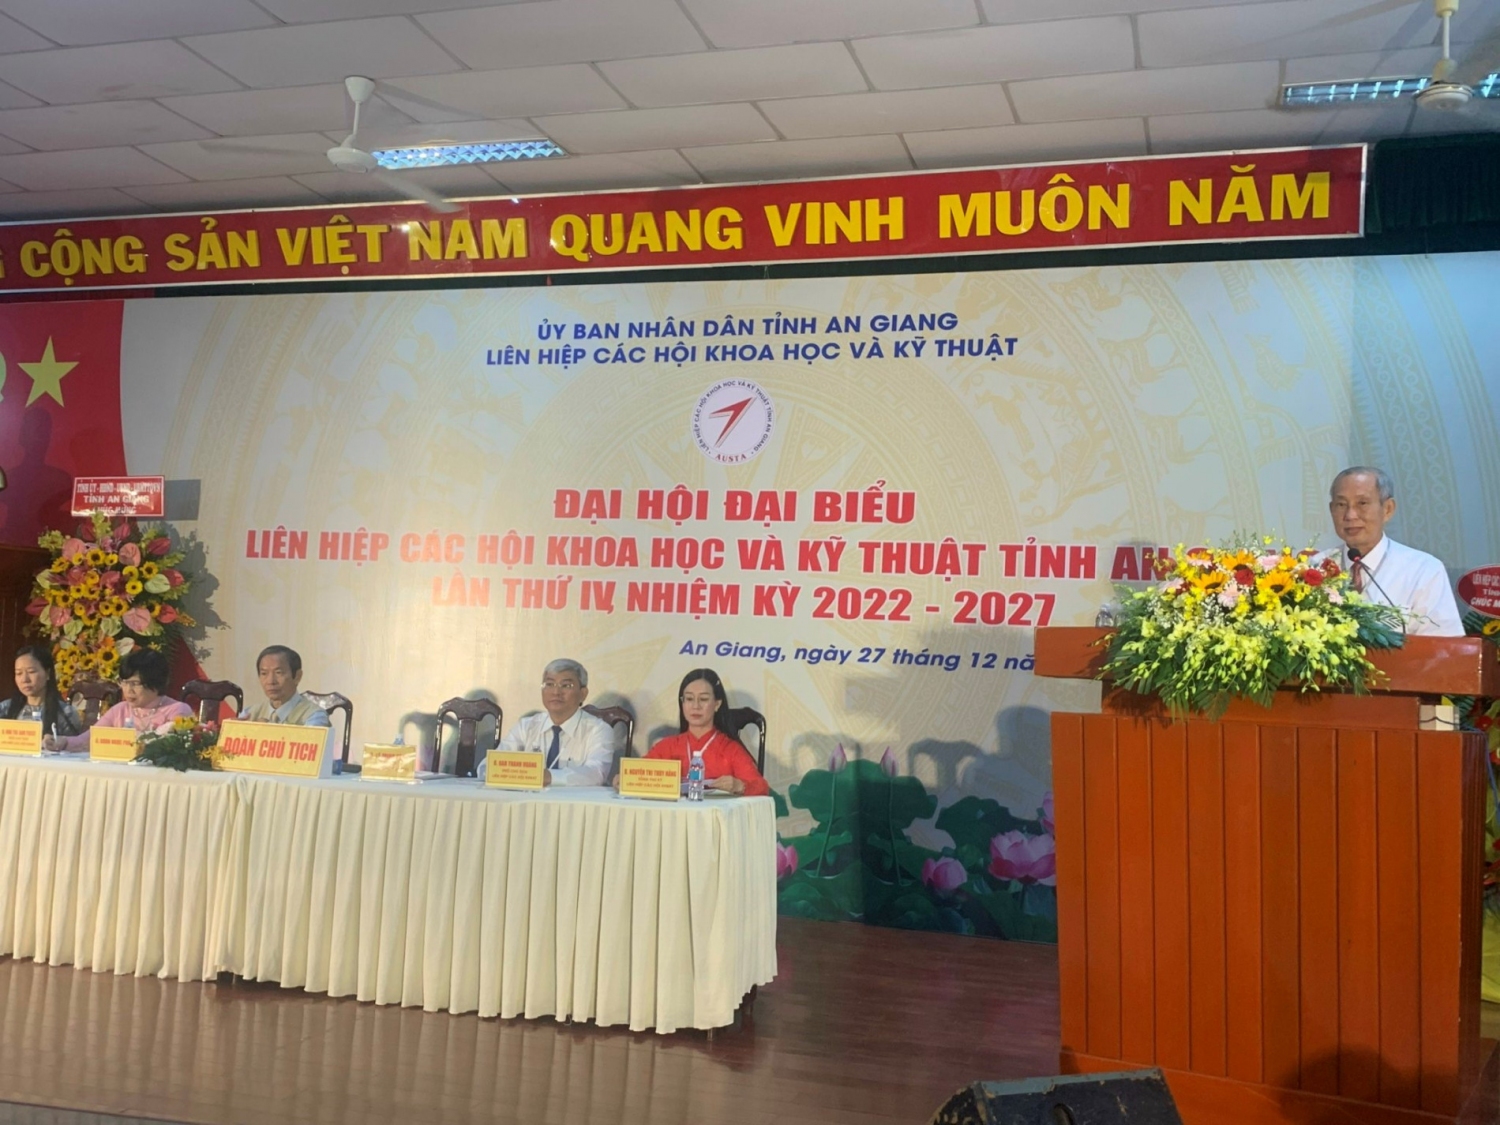 Ông Lê Minh Tùng, Chủ tịch Liên hiệp các Hội Khoa học và Kỹ thuật tỉnh nhiệm kỳ 2017-2022phát biểu khai mạc